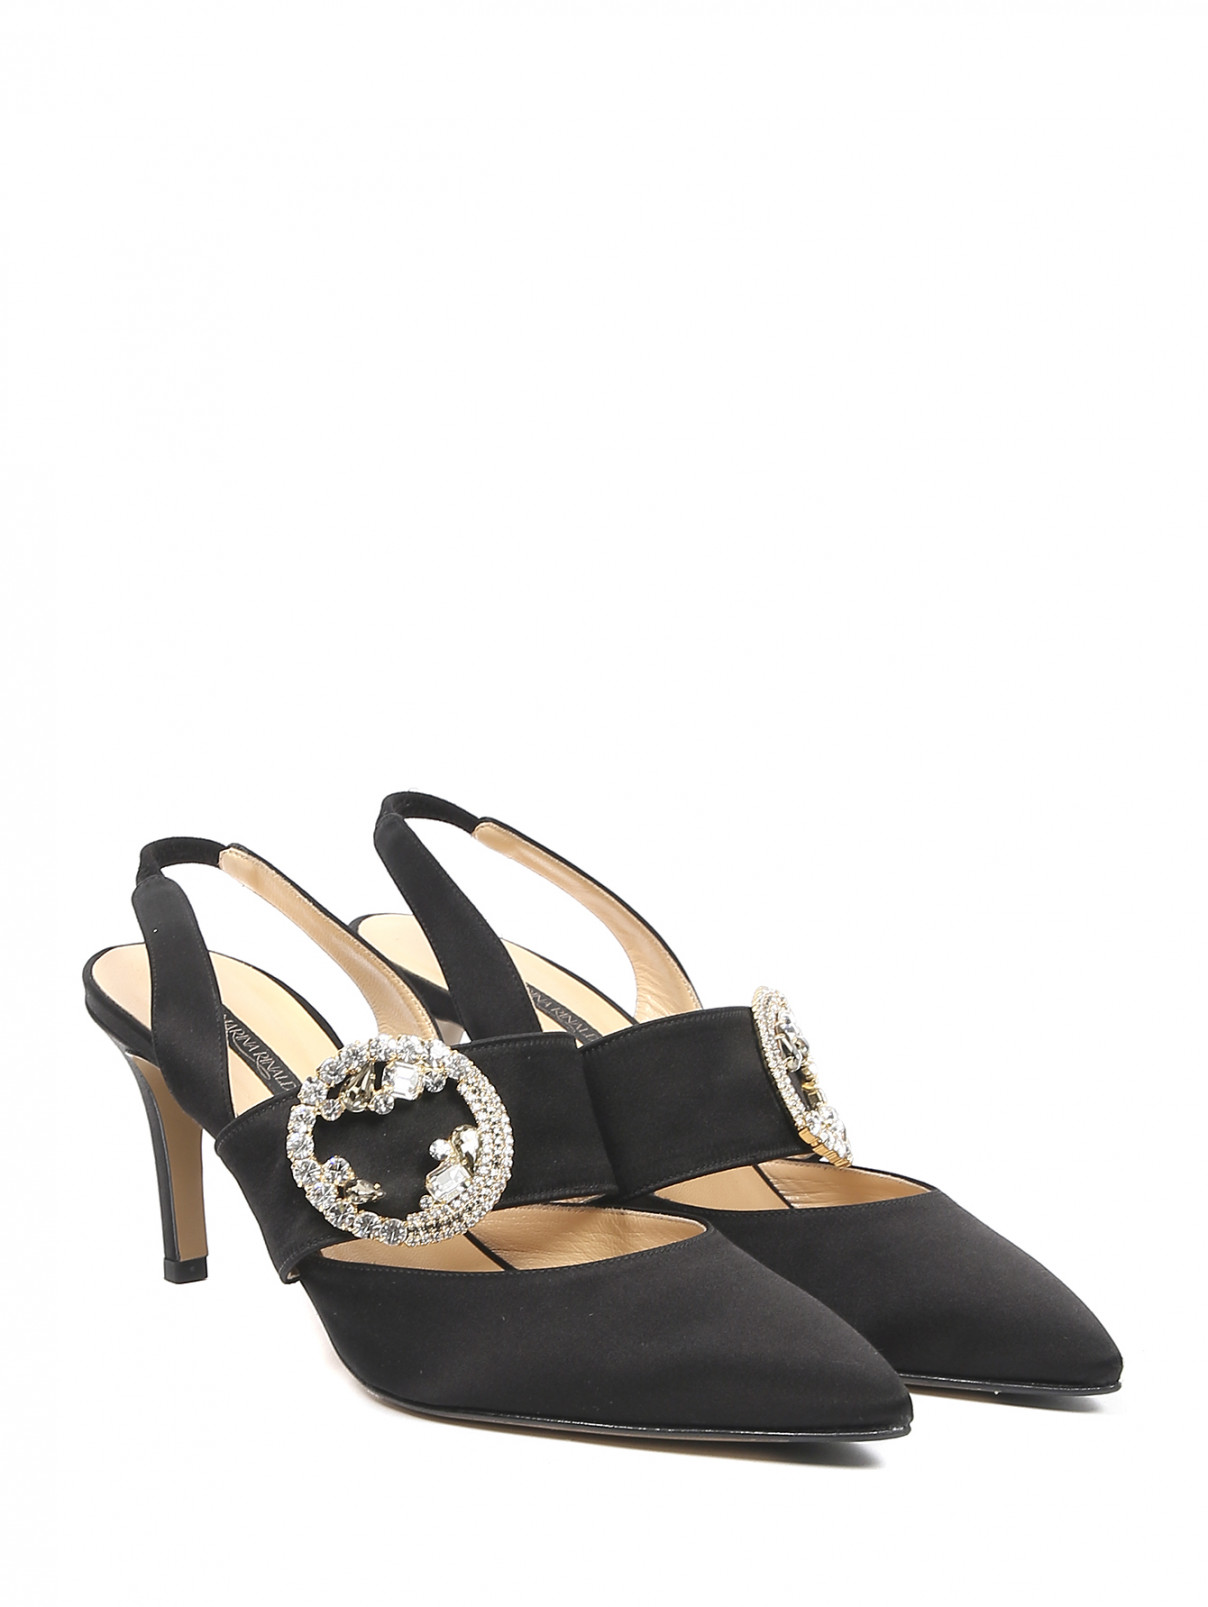 Туфли на каблуке из текстиля с декором Marina Rinaldi  –  Общий вид  – Цвет:  Черный